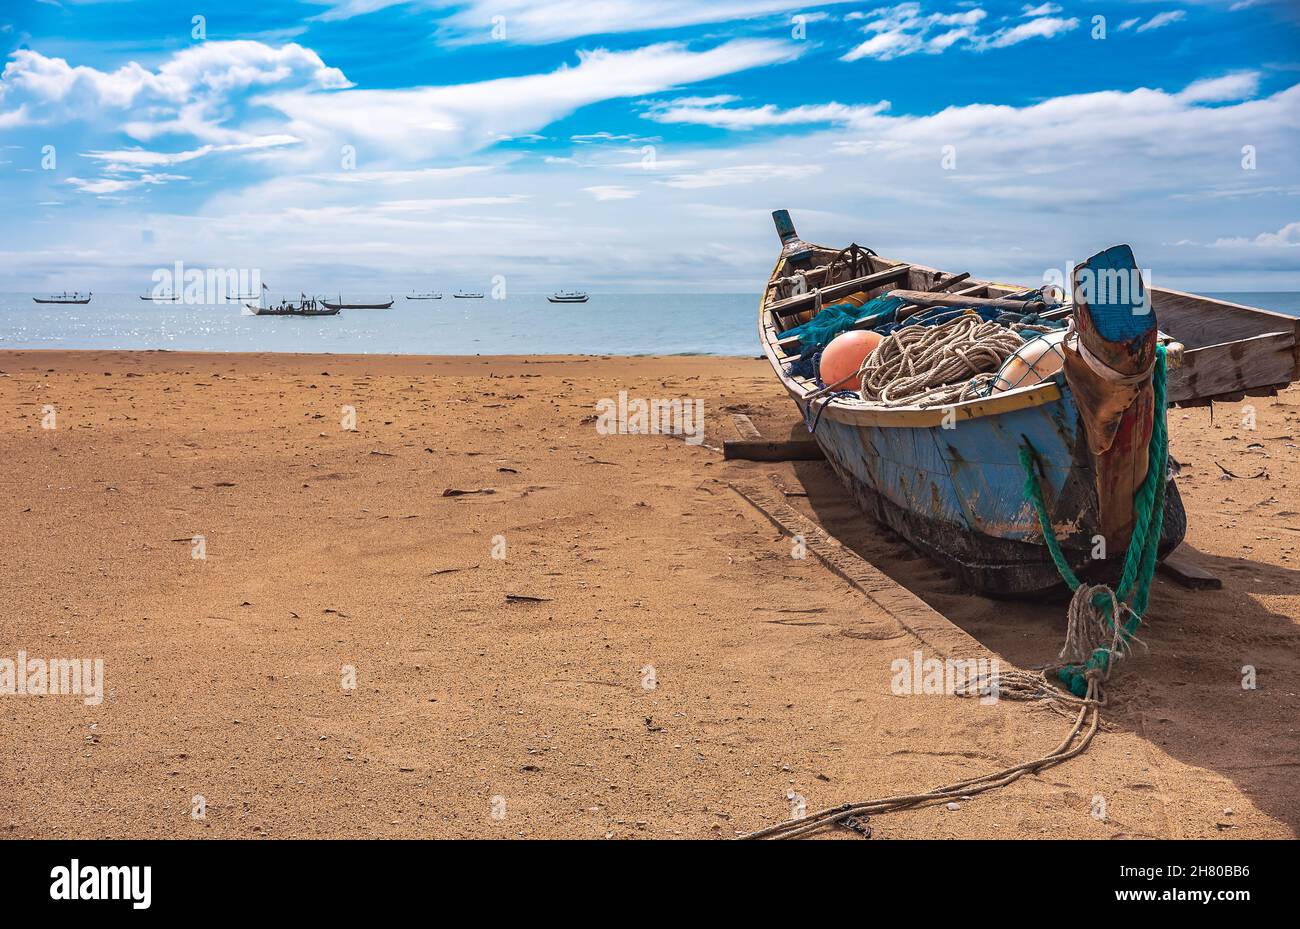 Angelbootmissionen am Strand warten auf den nächsten Angelausflug. Dieses Boot befindet sich an der tropischen Küste von Keta Ghana West Africa 2021 Stockfoto